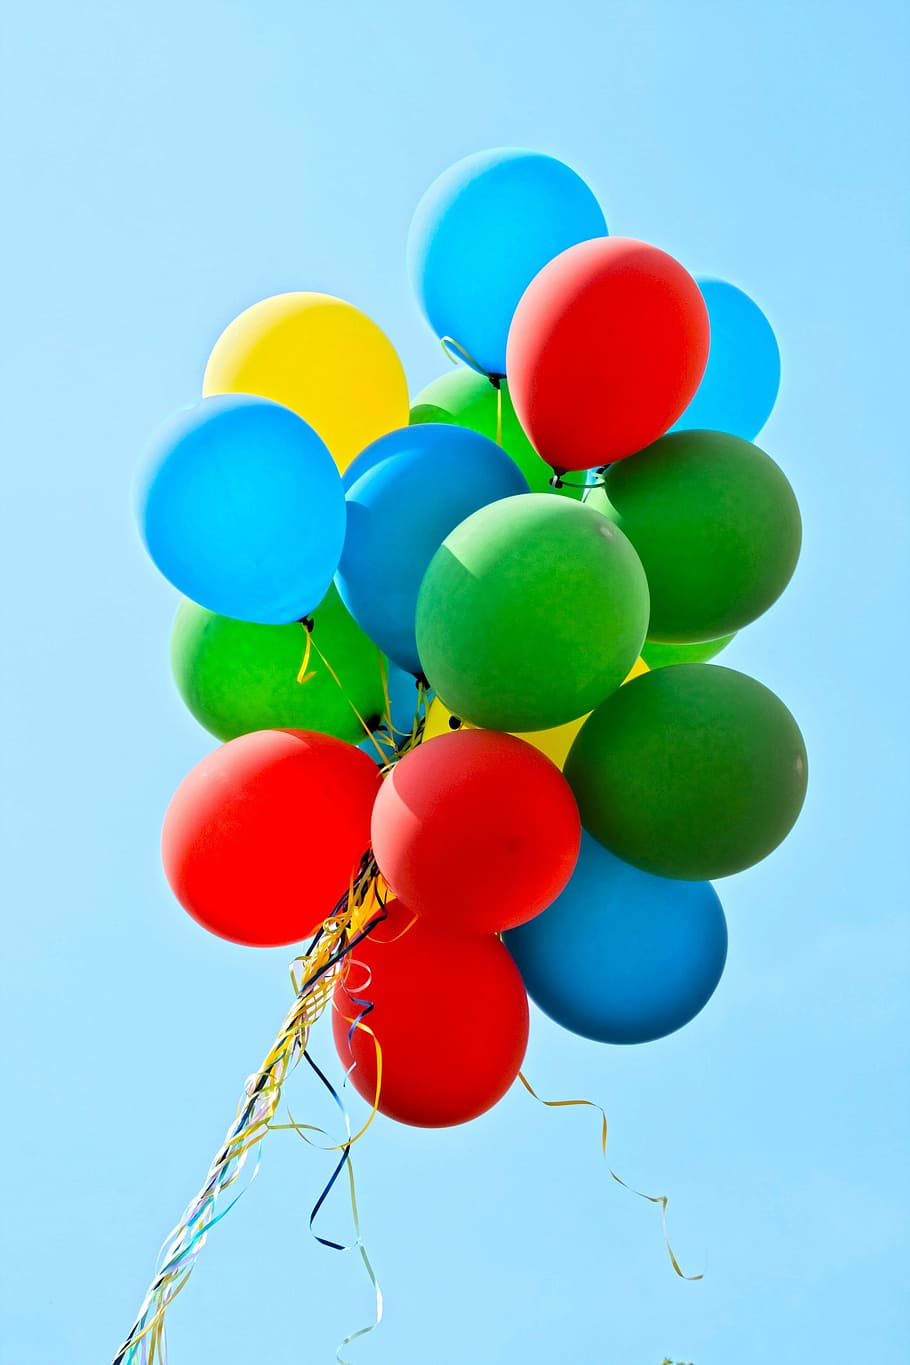 緑, 青, 赤, 黄色, 風船, パーティー, カラフル, 装飾, 子供の誕生日, 楽しい